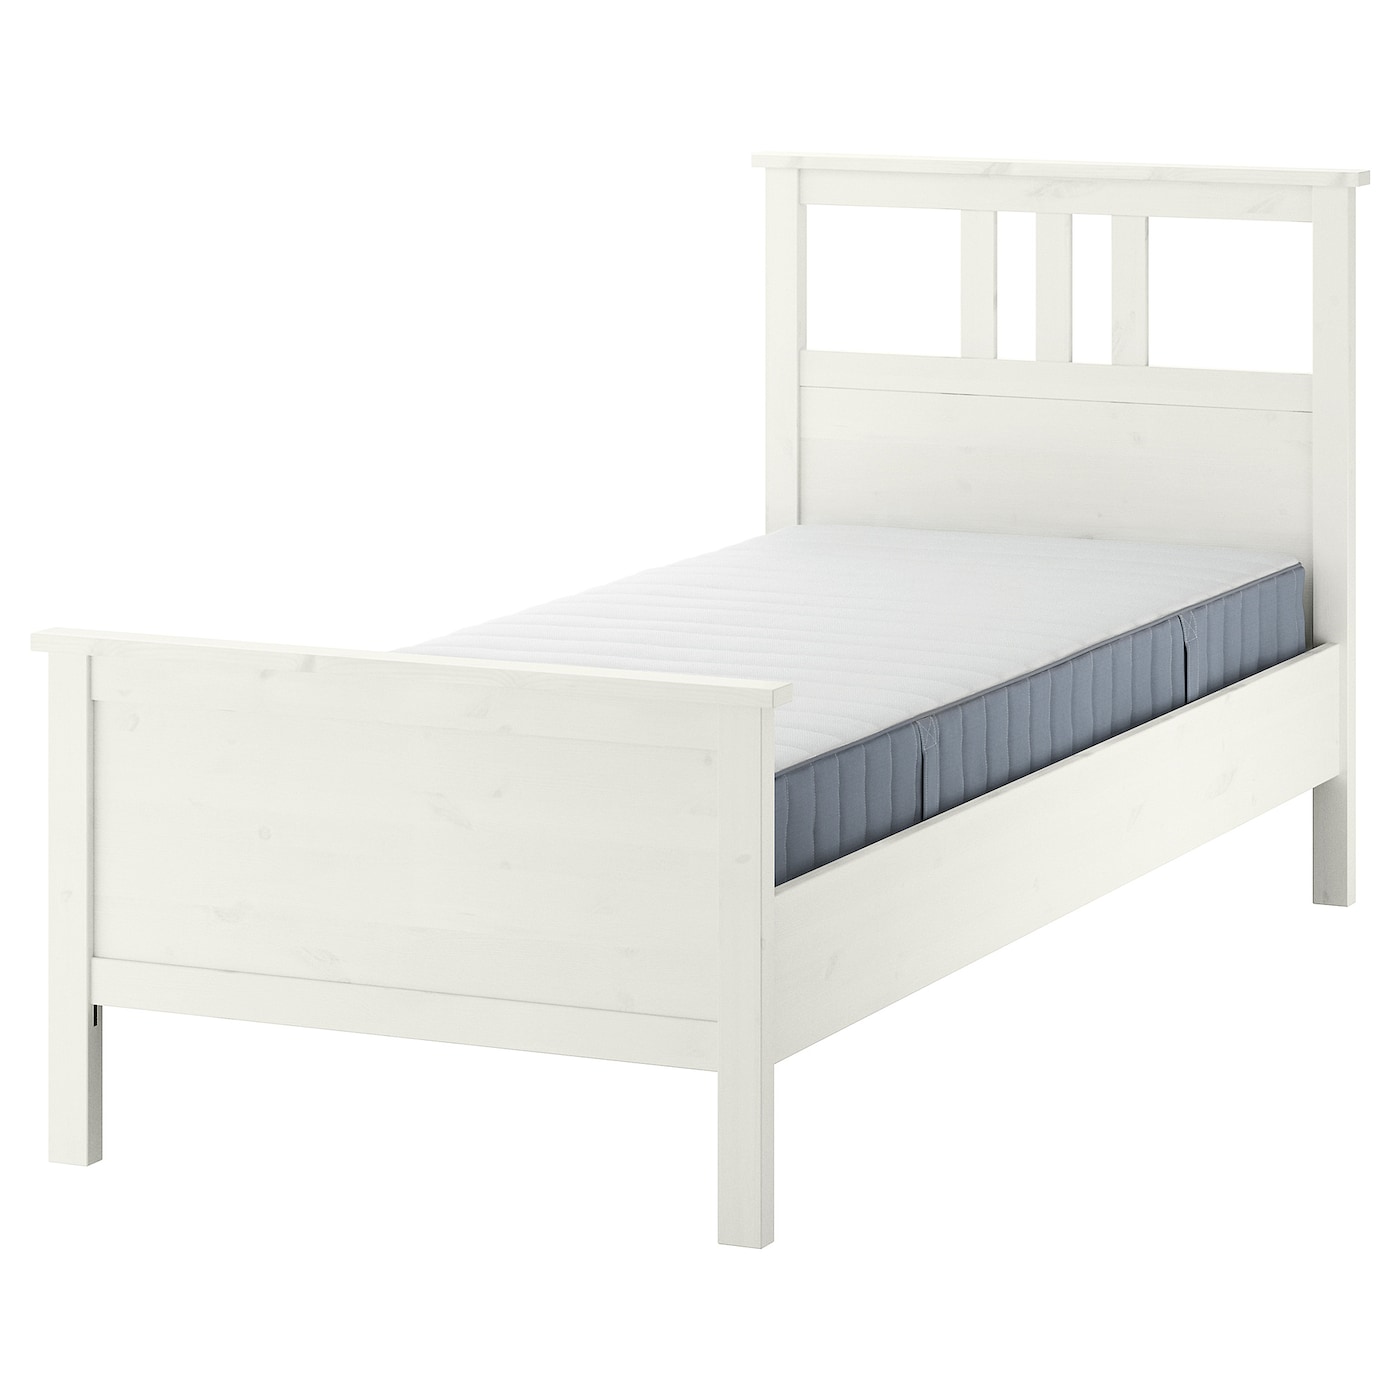 Кровать - IKEA HEMNES, 200х90 см, матрас жесткий, белый, ХЕМНЭС ИКЕА